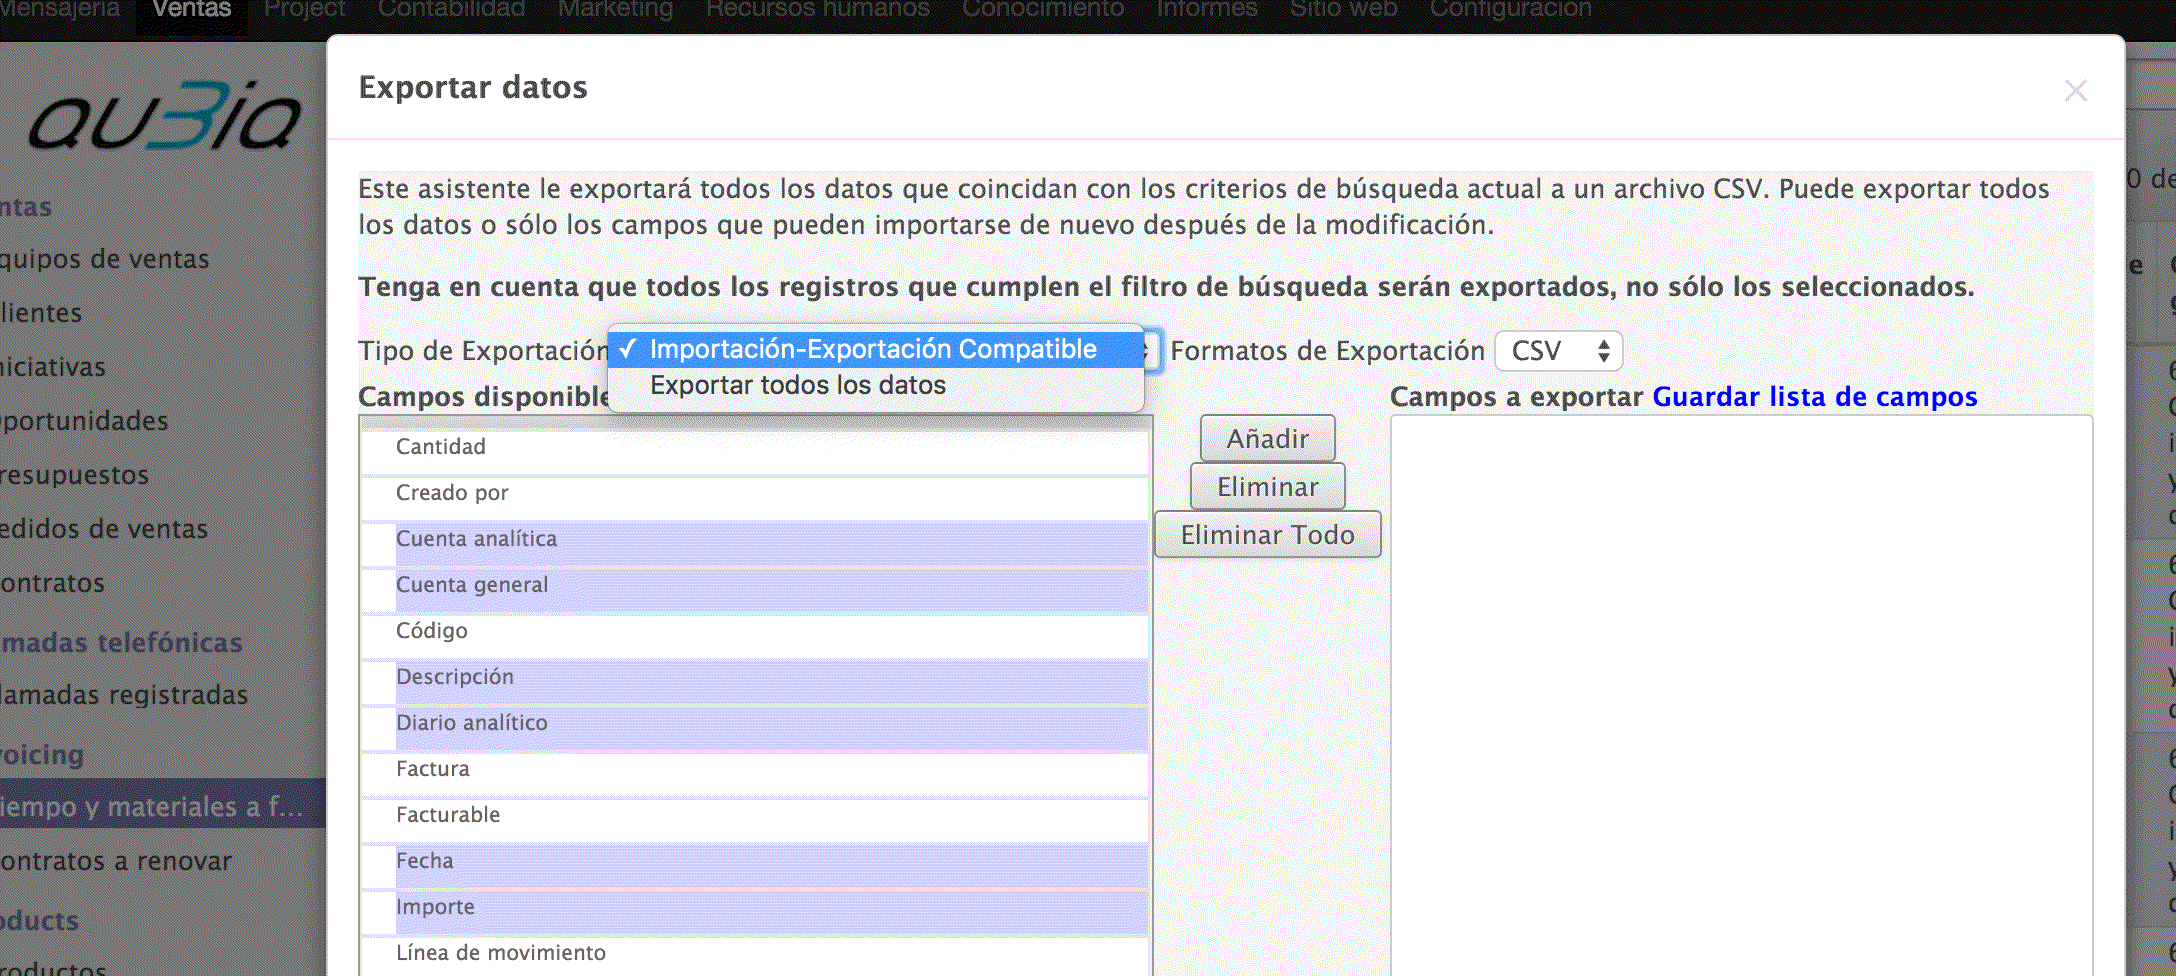 Descripción: Macintosh HD:Users:alexayllon:Desktop:Exportar datos Odoo V8.png